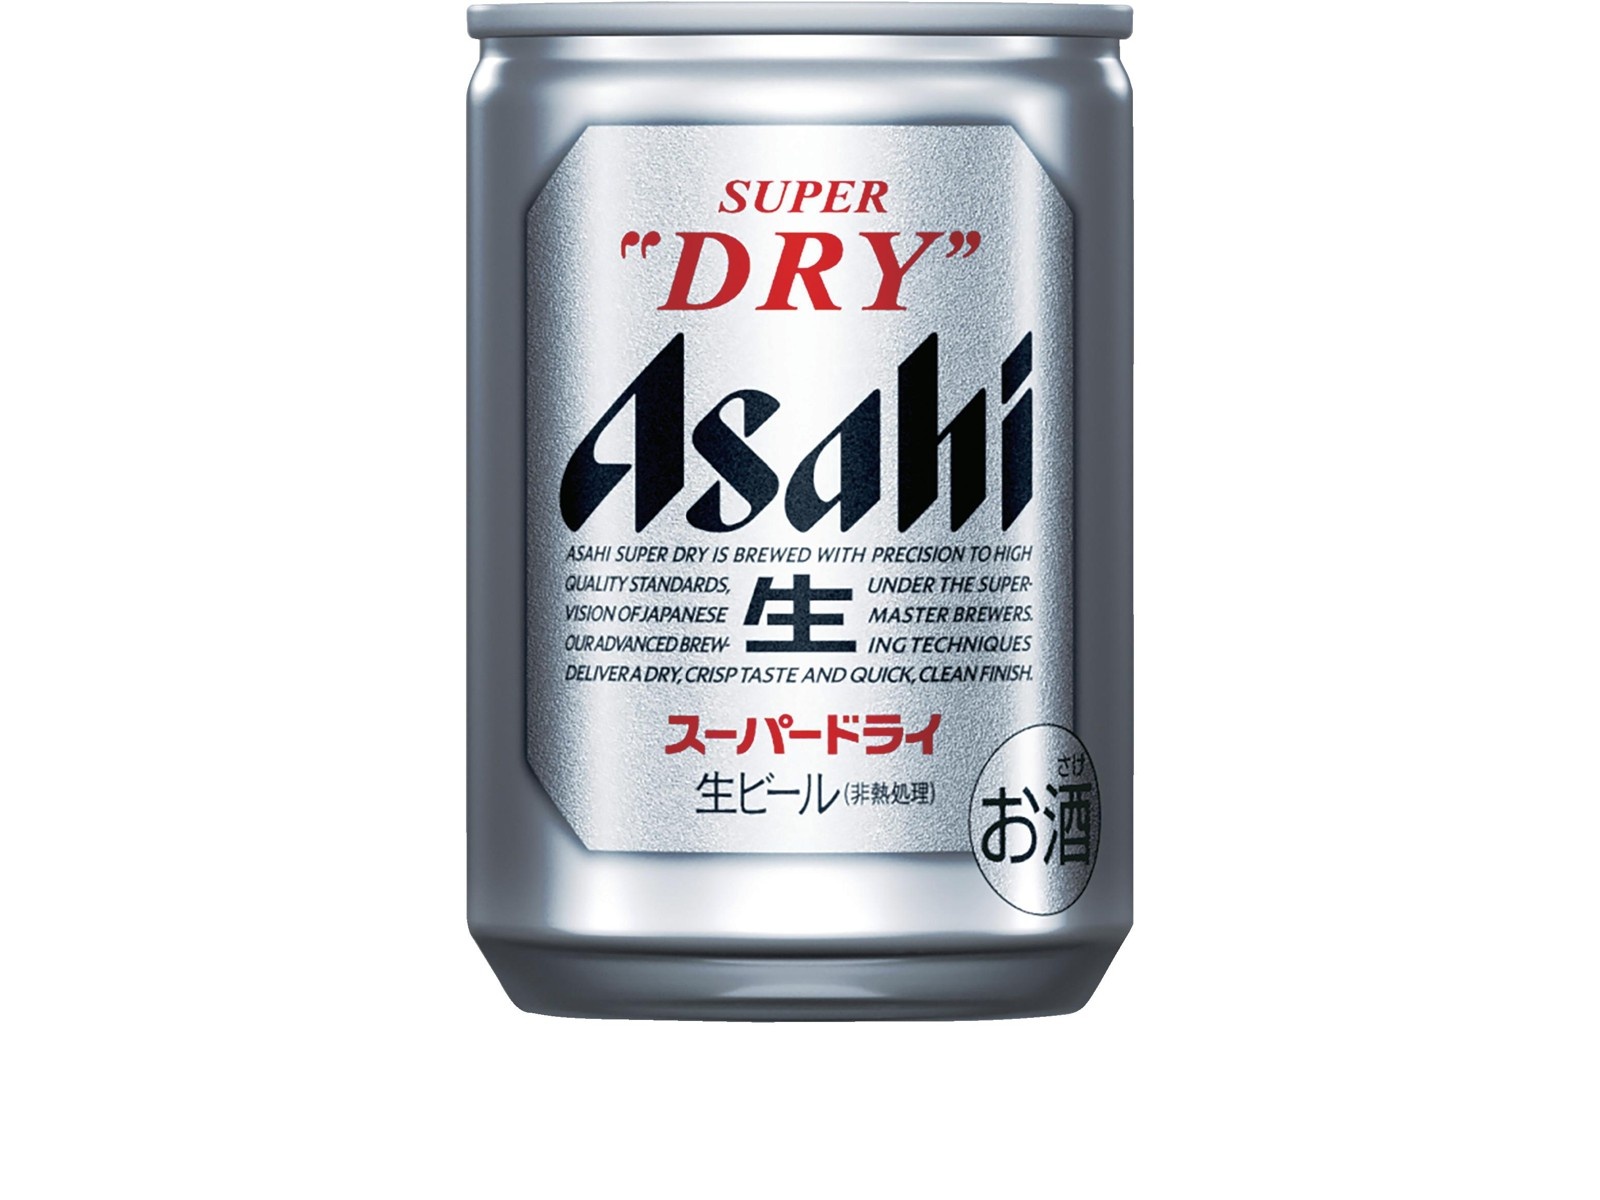 アサヒ スーパードライ 135ml×6缶組| コープこうべネット